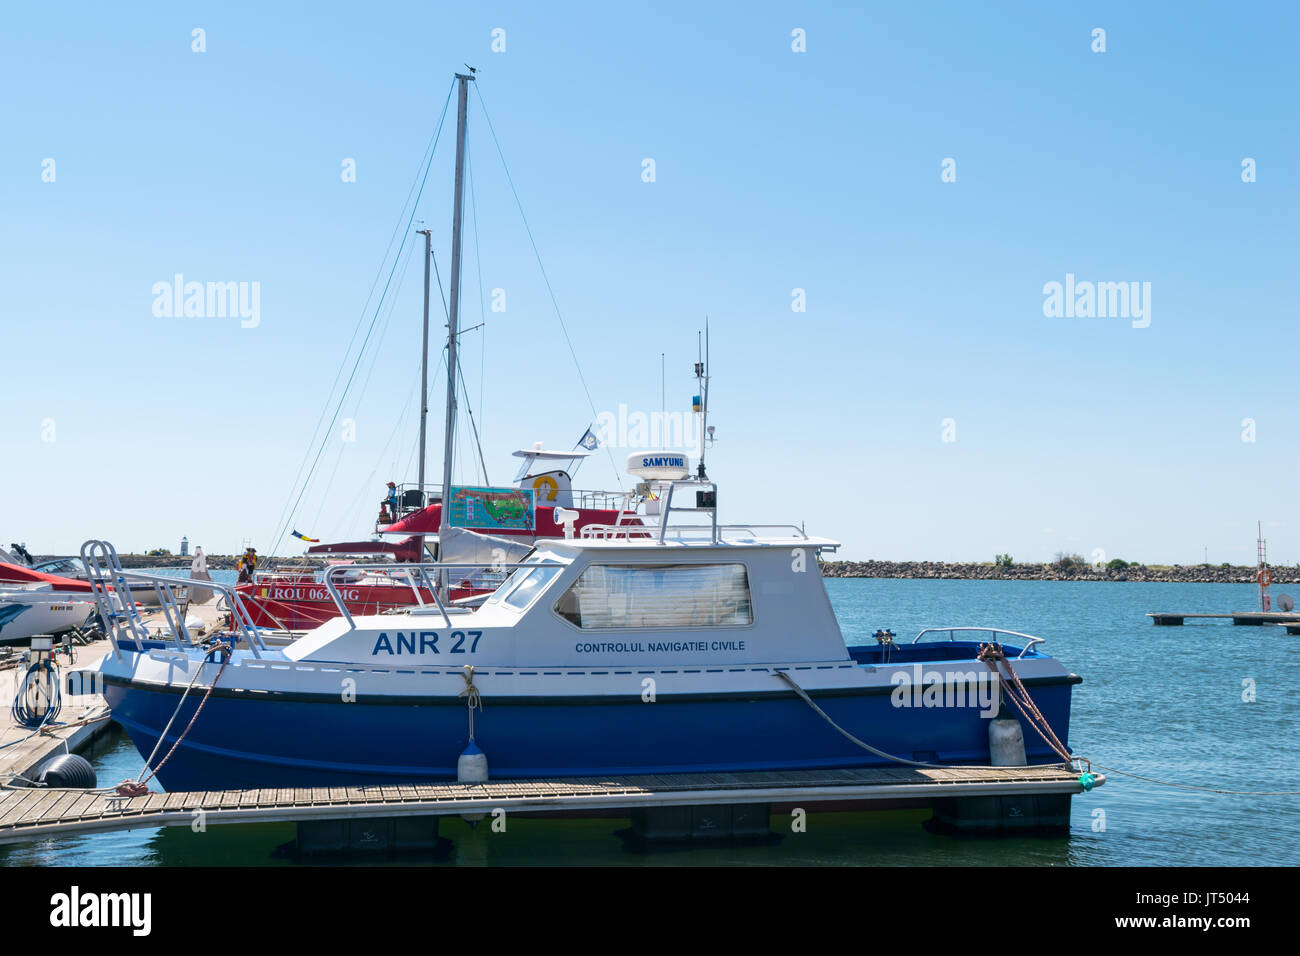 Mangalia, Constanta, Romania - Luglio 7, 2017: controllo della navigazione civile barca ancorata al porto di Mangalia in Romania, l'Europa. Foto Stock